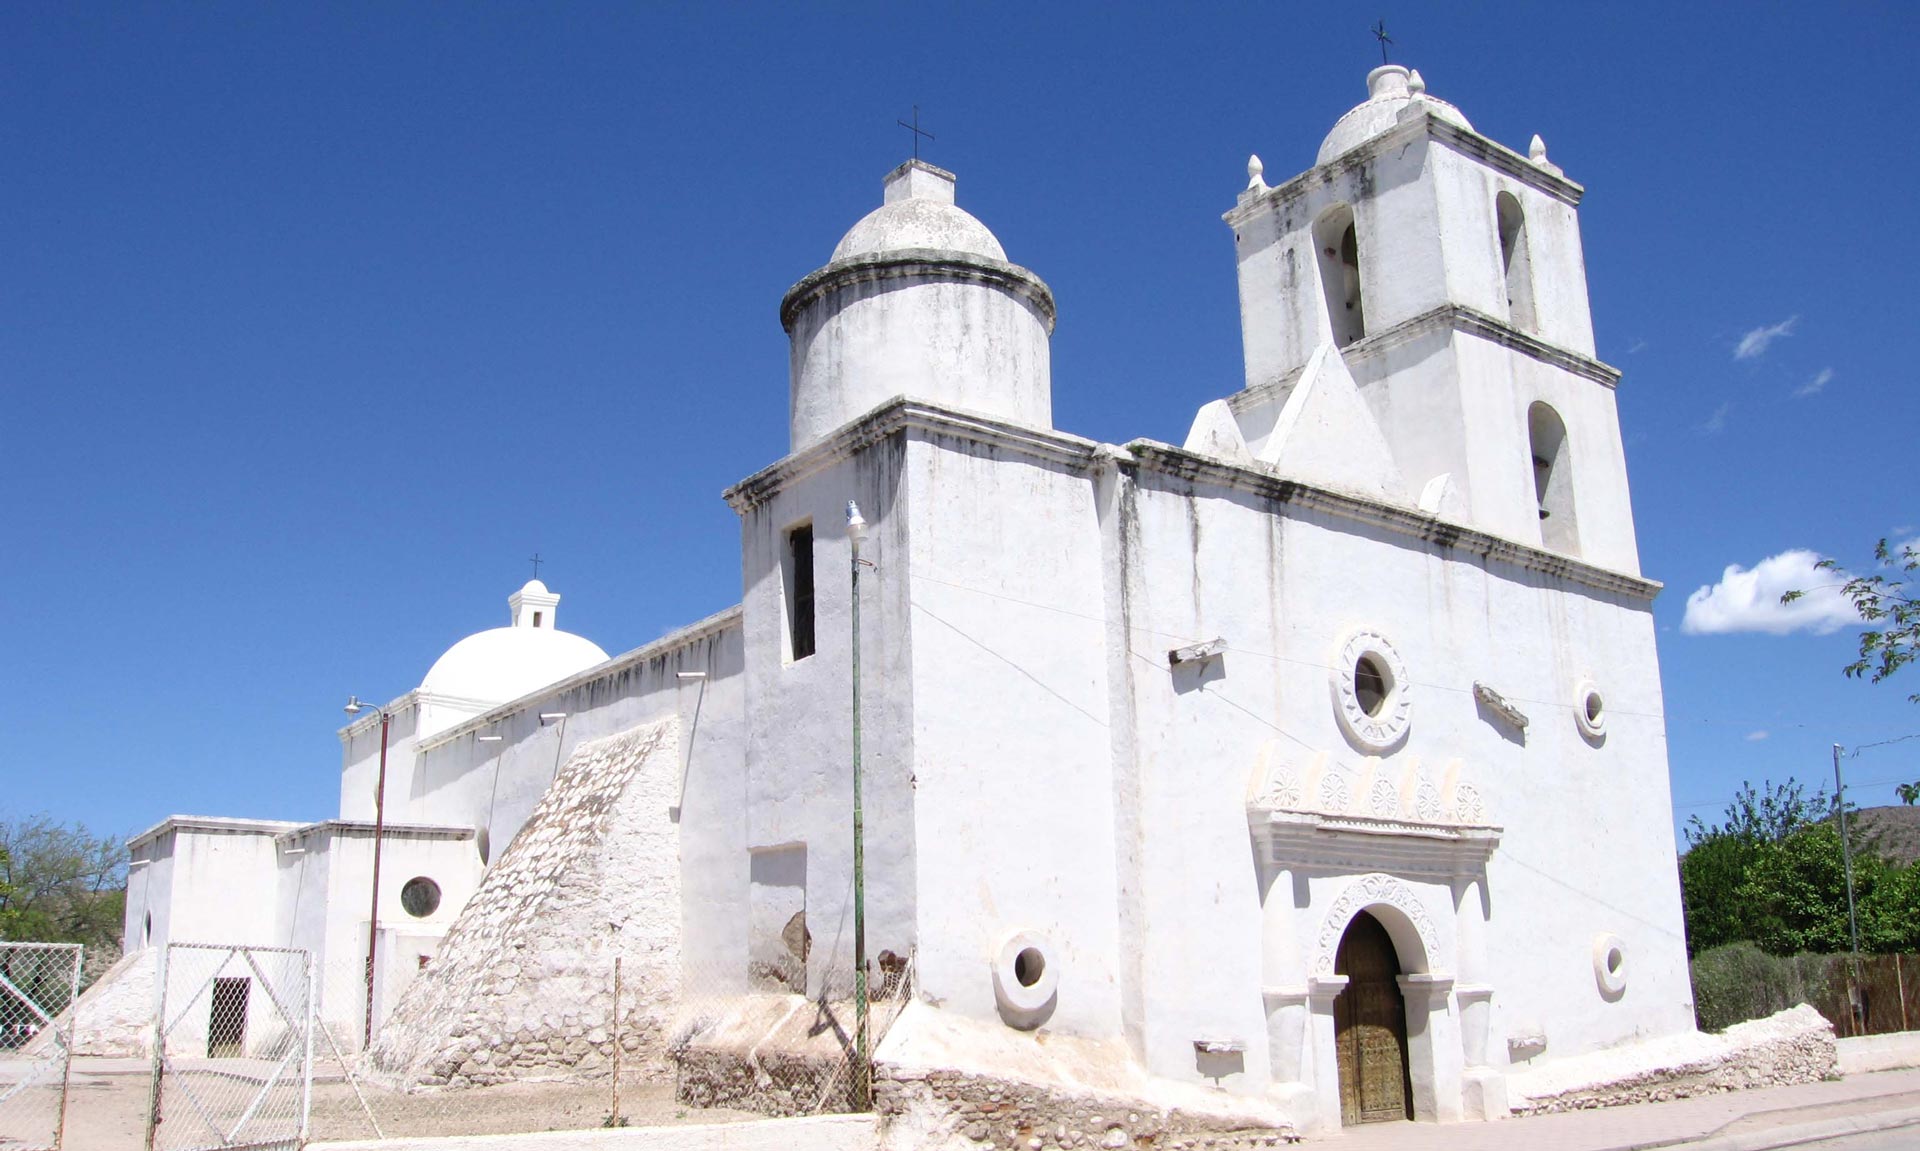 Mission San Ignacio de Caborica in San Ignacio, Sonora - Explore Sonora